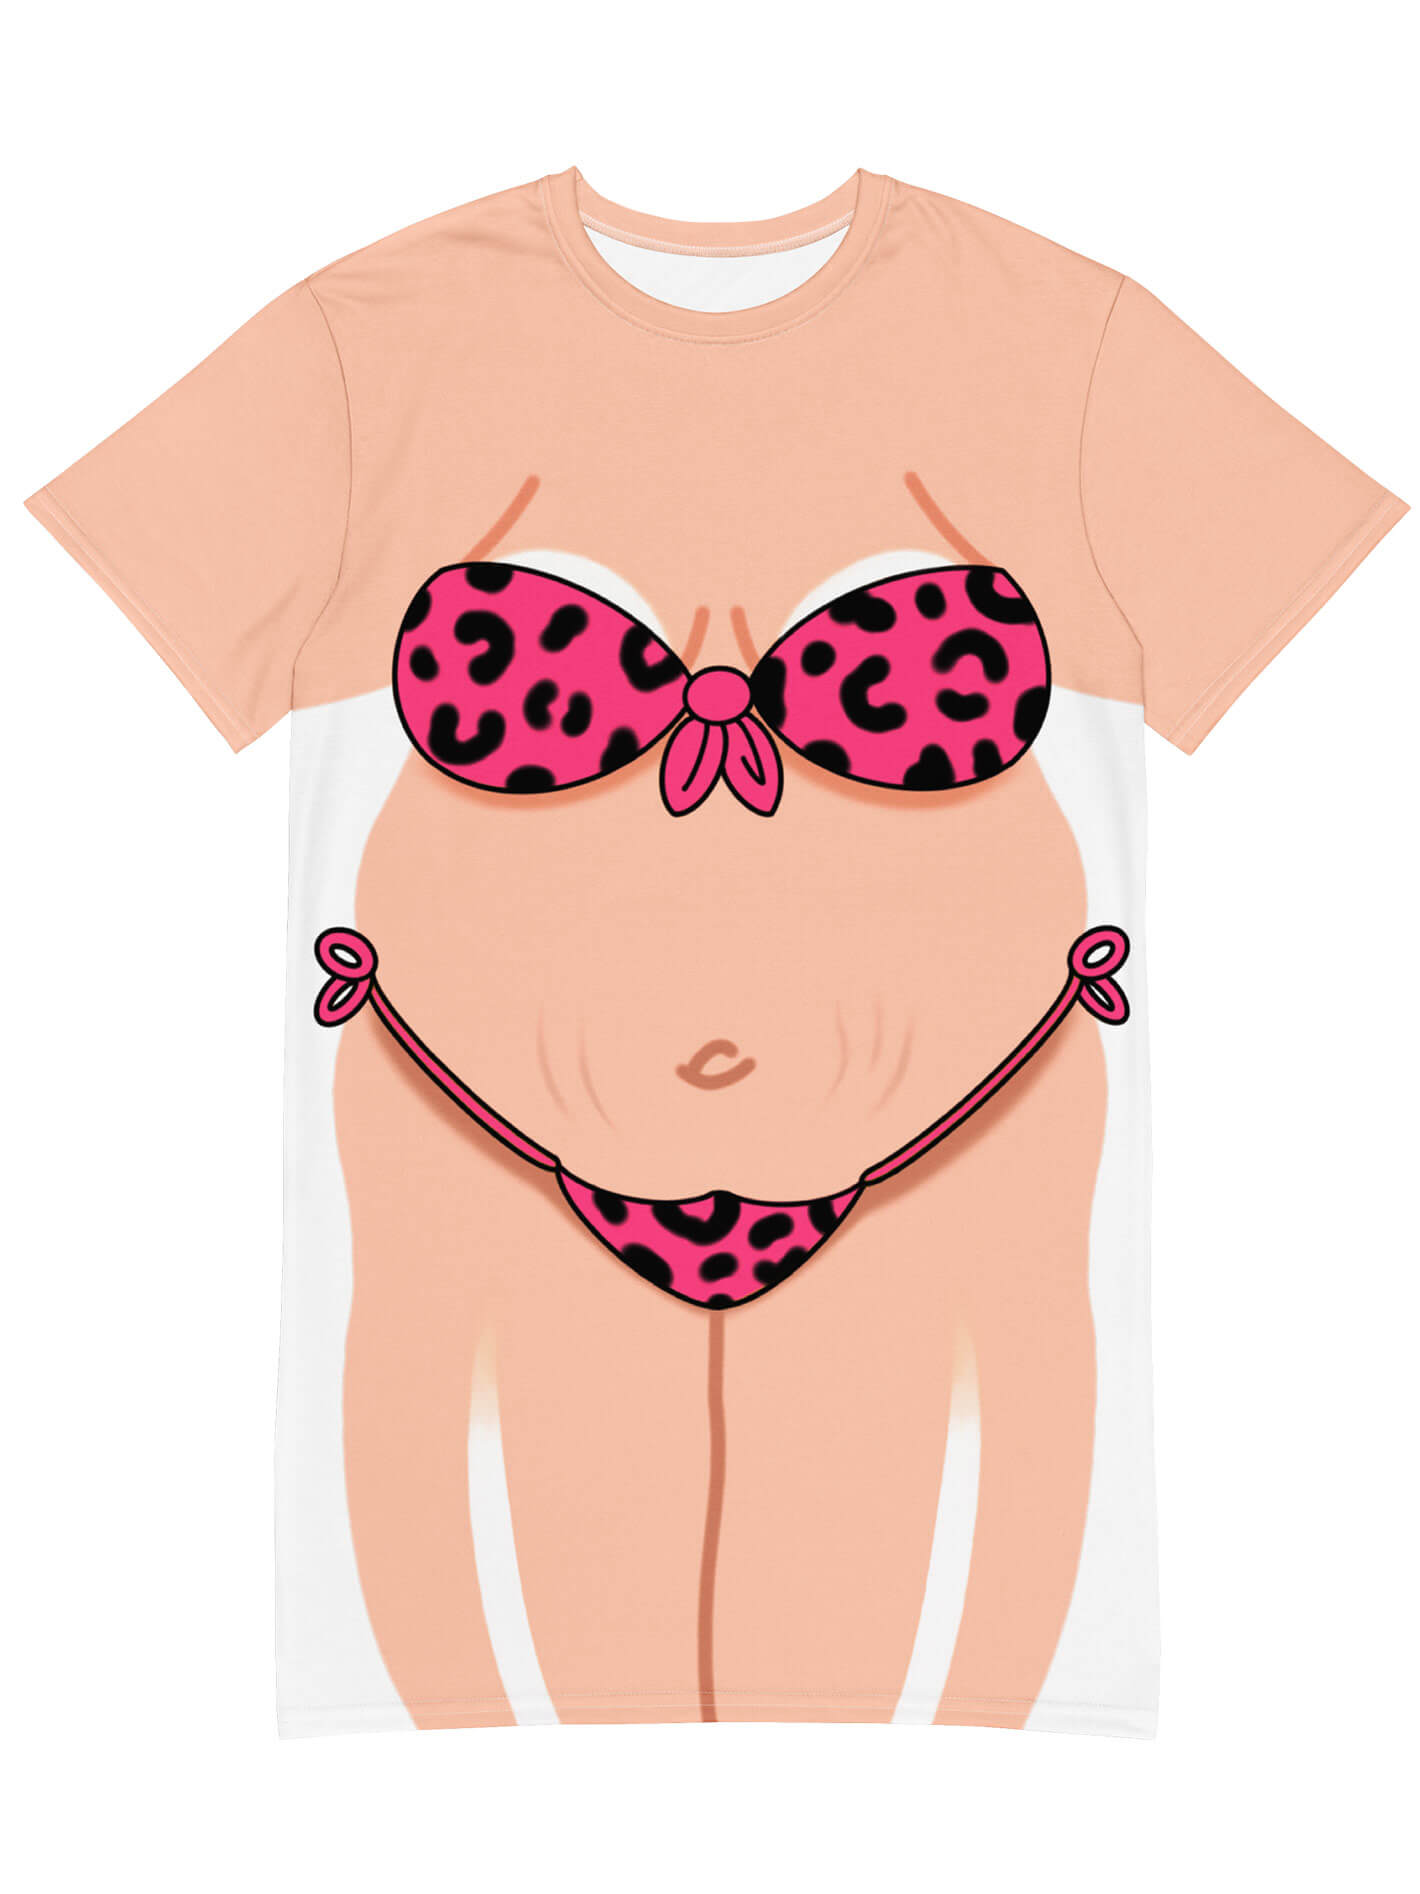 plus size beach wear outfit ideas 2 | Plus size beach wear, Plus size  swimwear, Plus size beach outfits